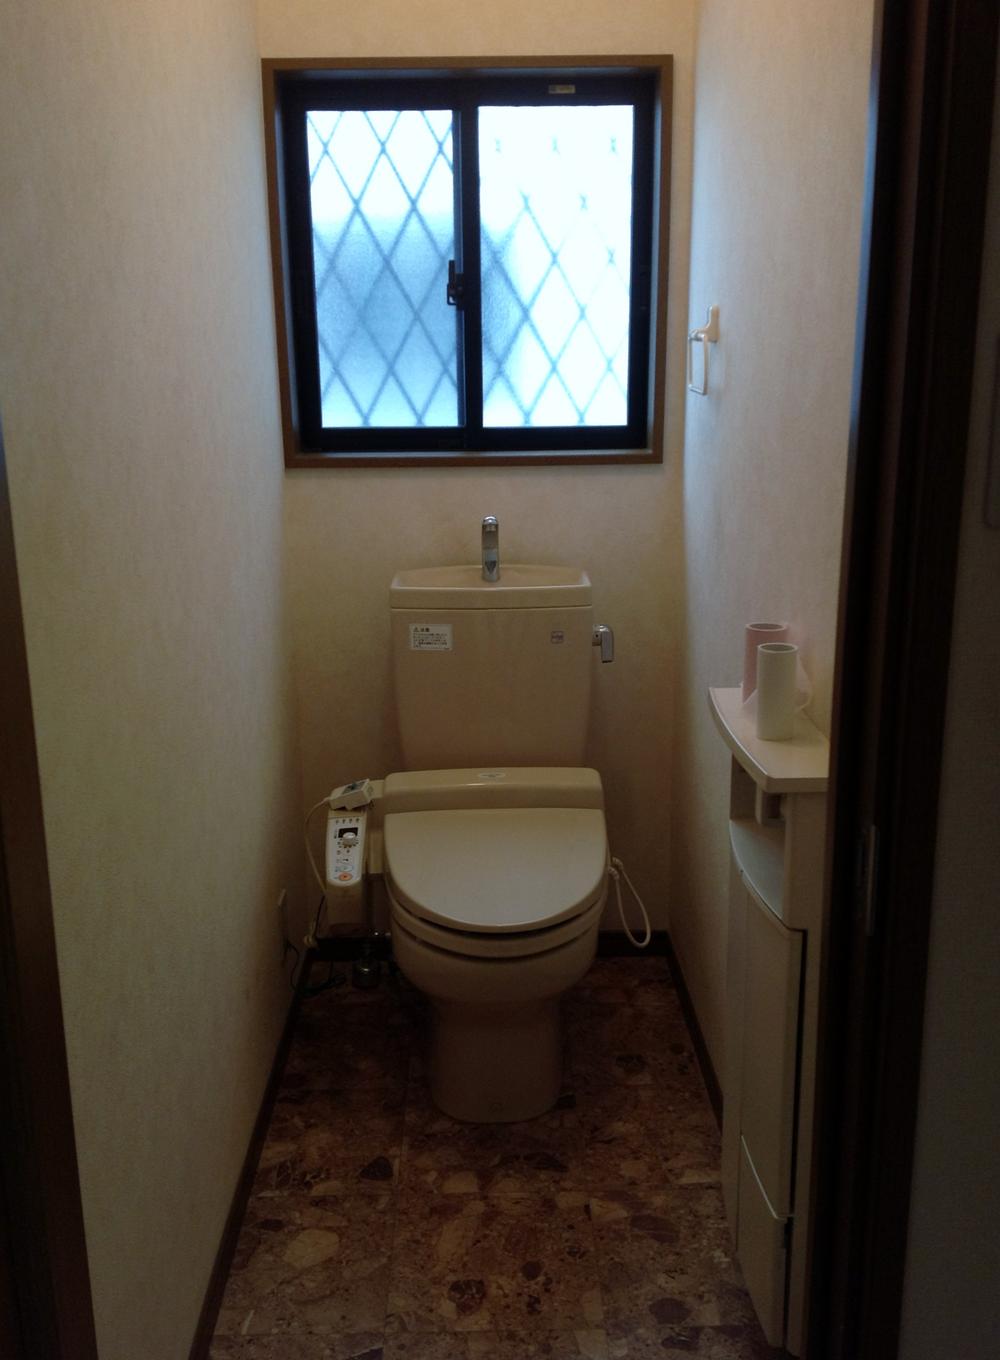 Toilet. 1F toilet!